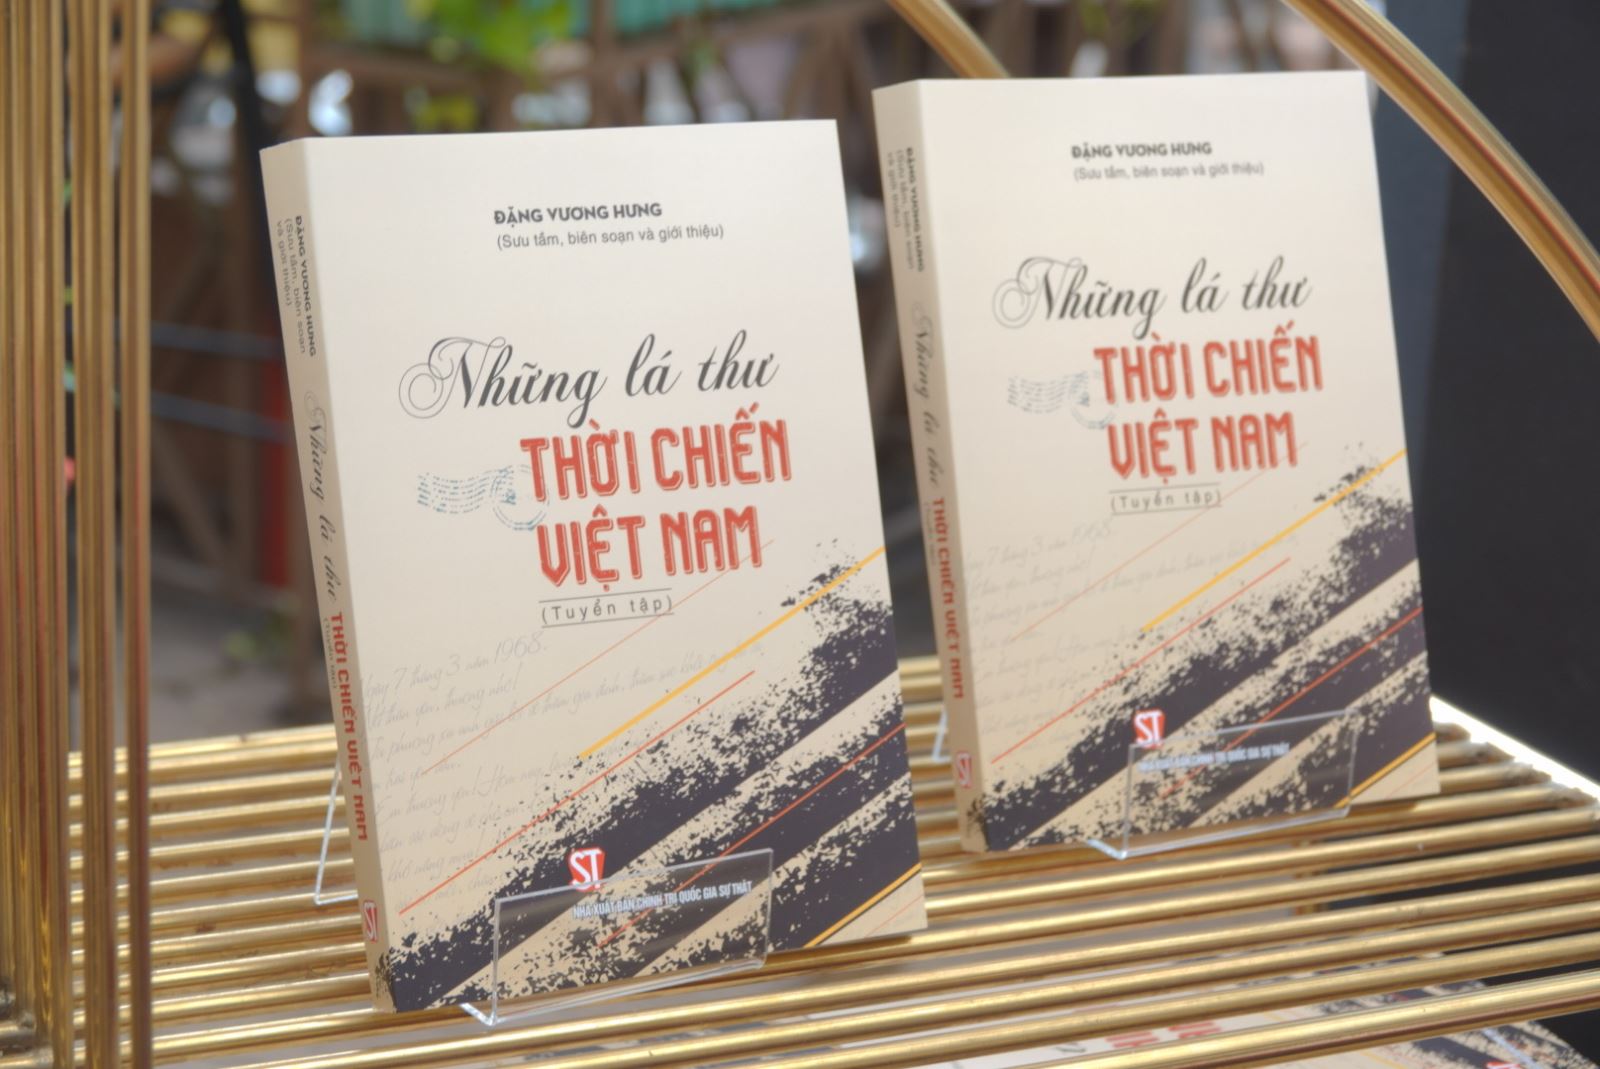 Ra mắt sách "Những lá thư thời chiến Việt Nam"